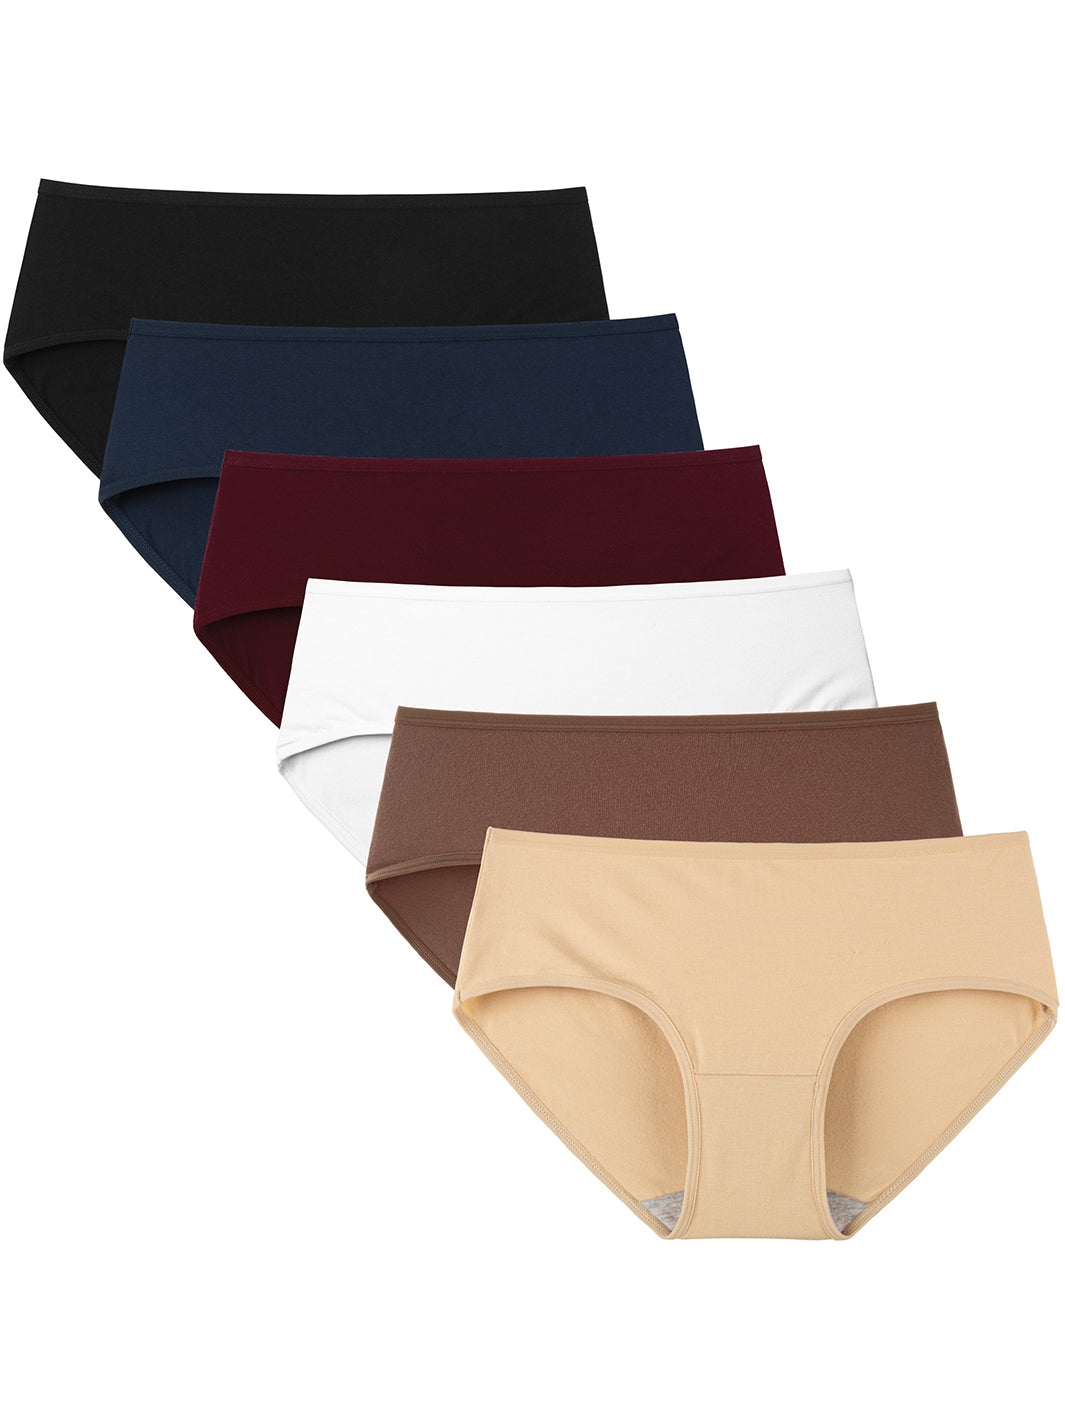 Buy 6 Pack Women's Hipster Brief Nylon Spandex Underwear Online at